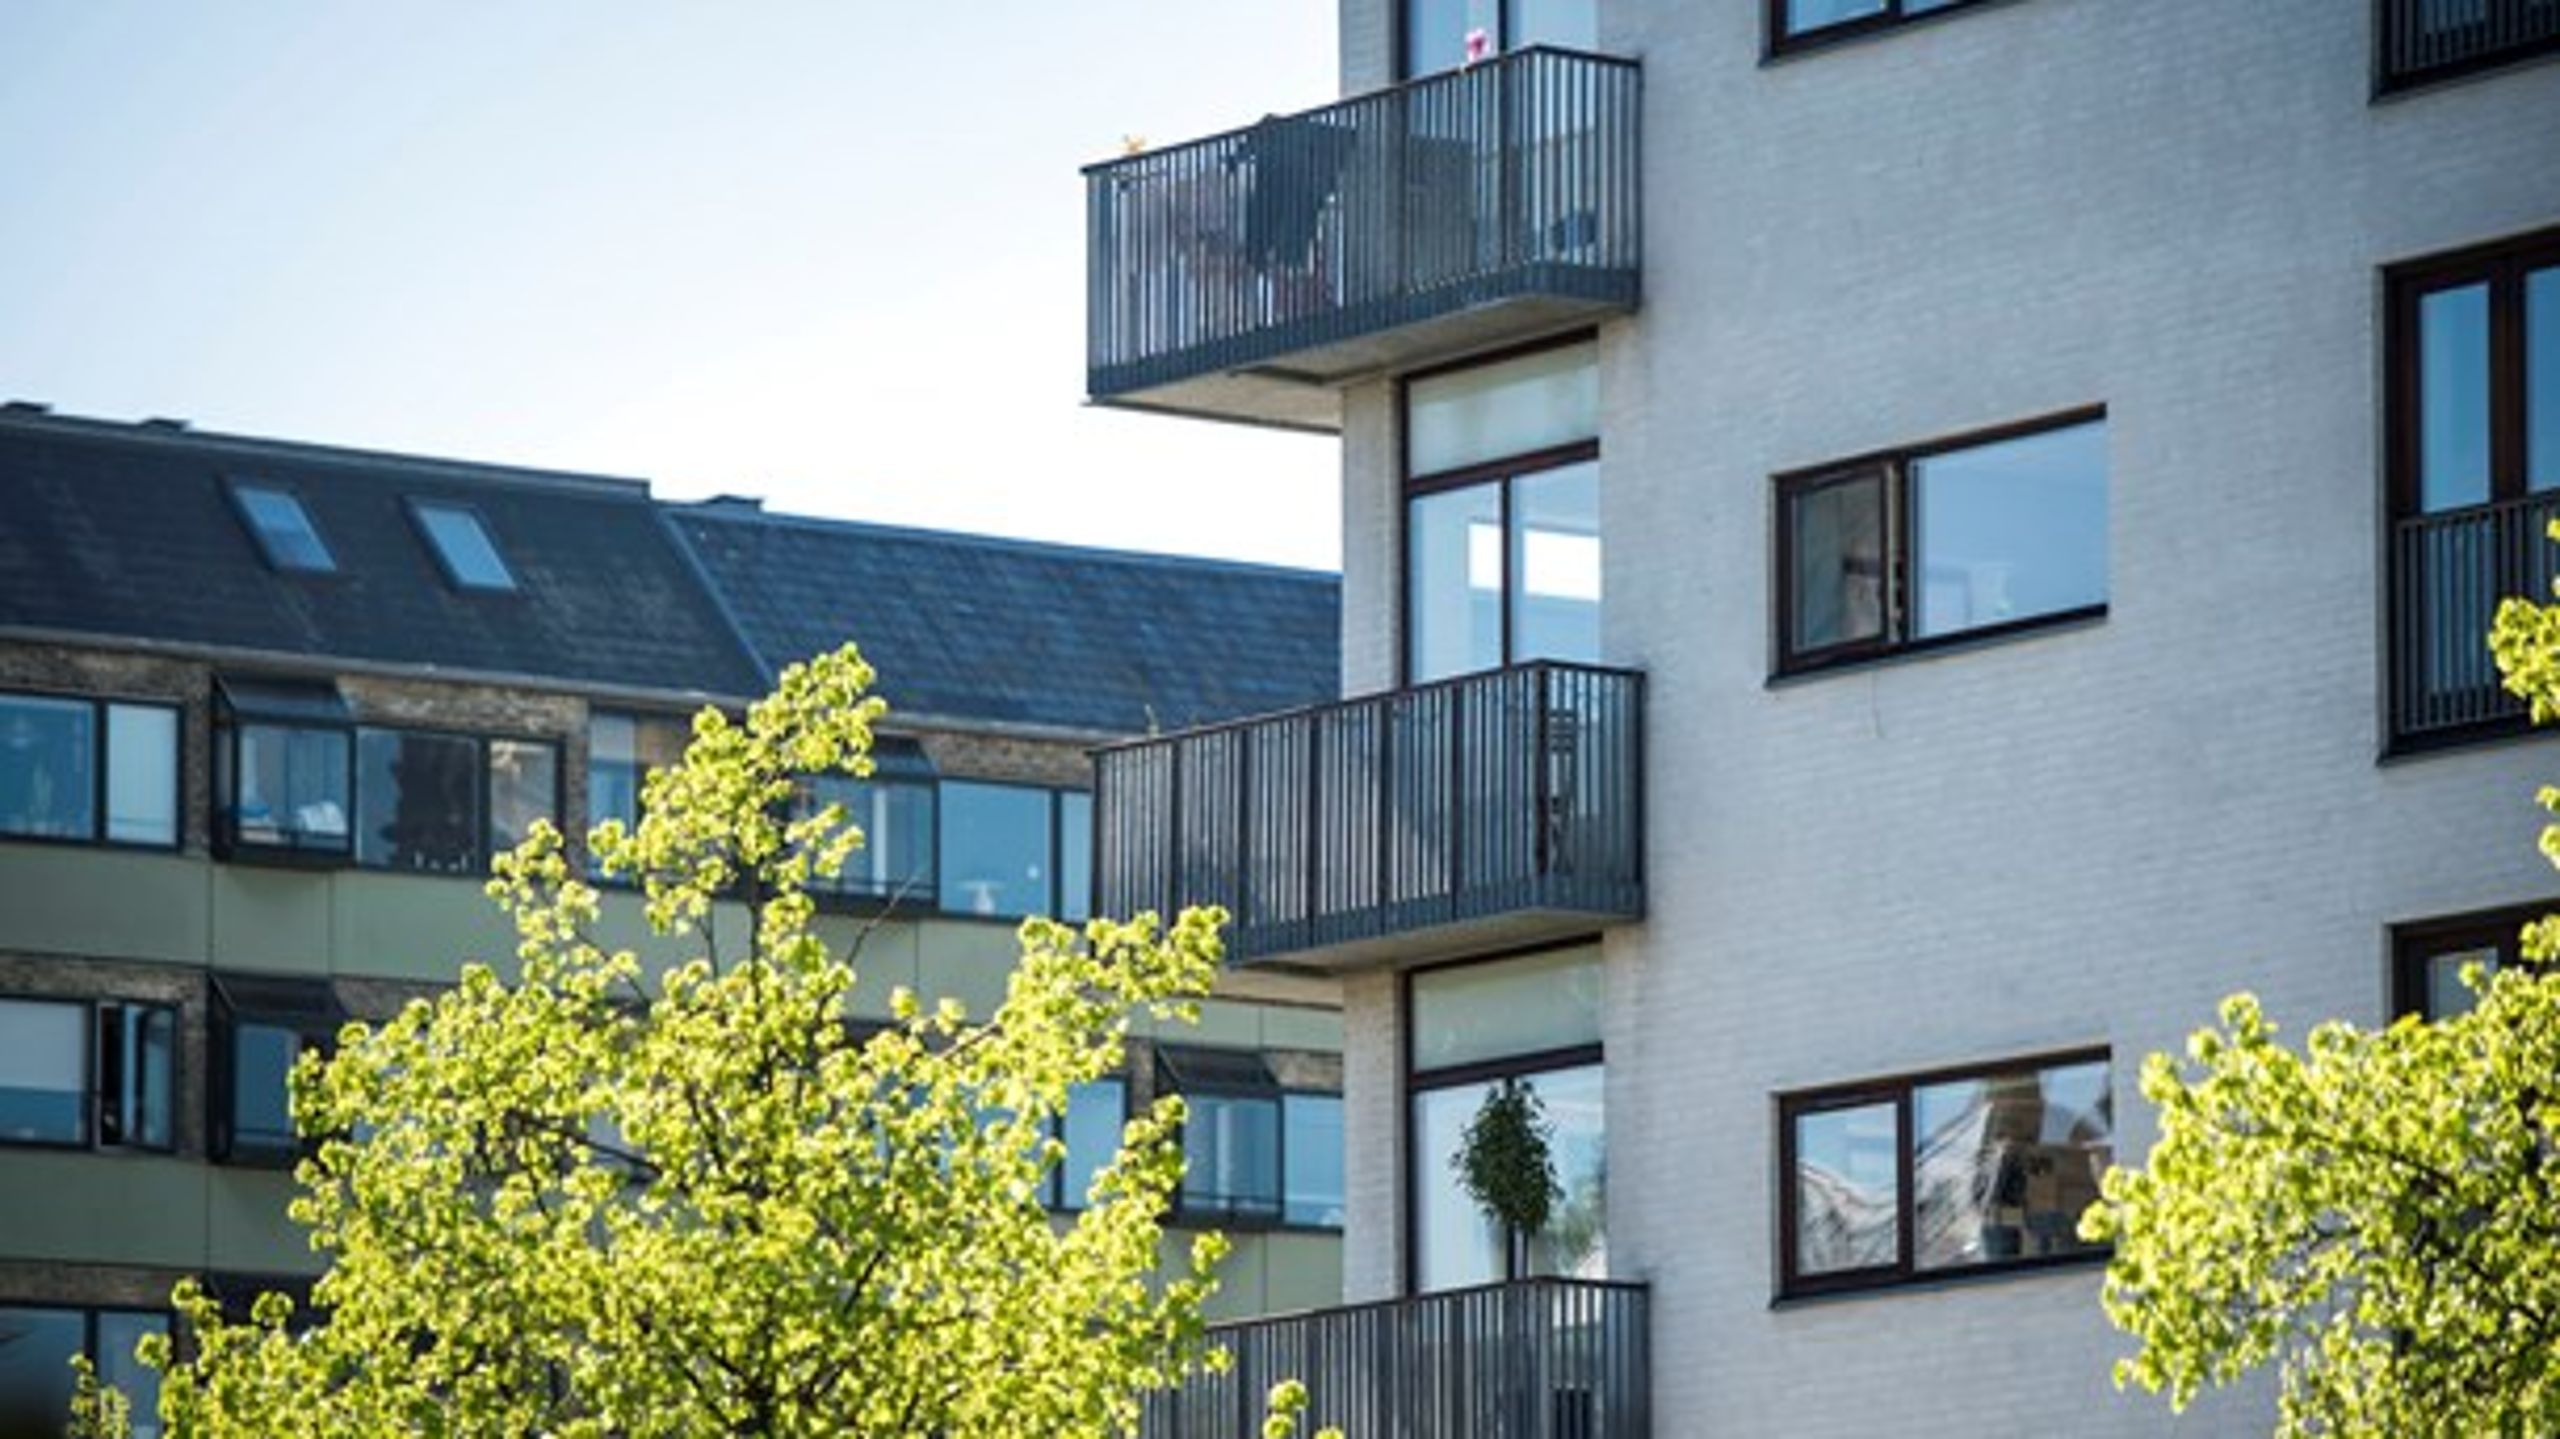 Kommuner i hele landet får med nyt lovforslag nu mulighed for at bygge gode boliger med altaner og vinduer i gamle erhvervs- og havneområder, skriver Jacob Bjerregaard (S).